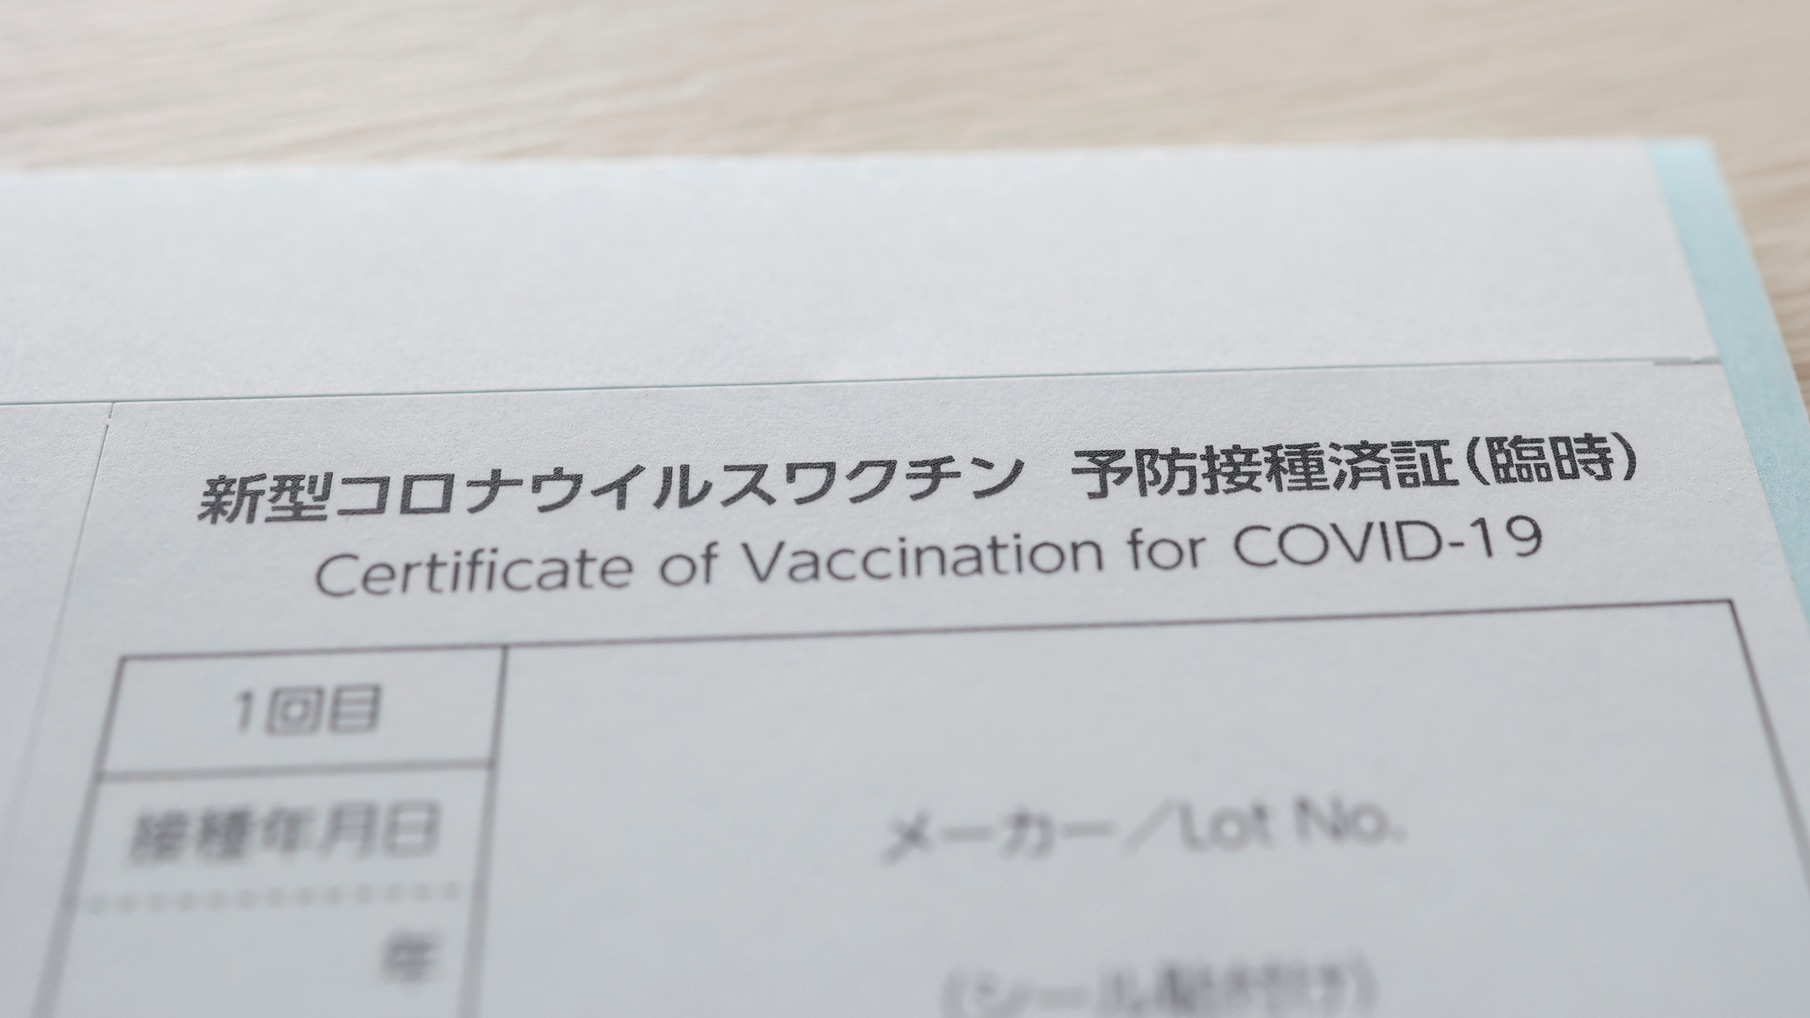 Eine lokale Covid-19-Impfbescheinigung in Japan.